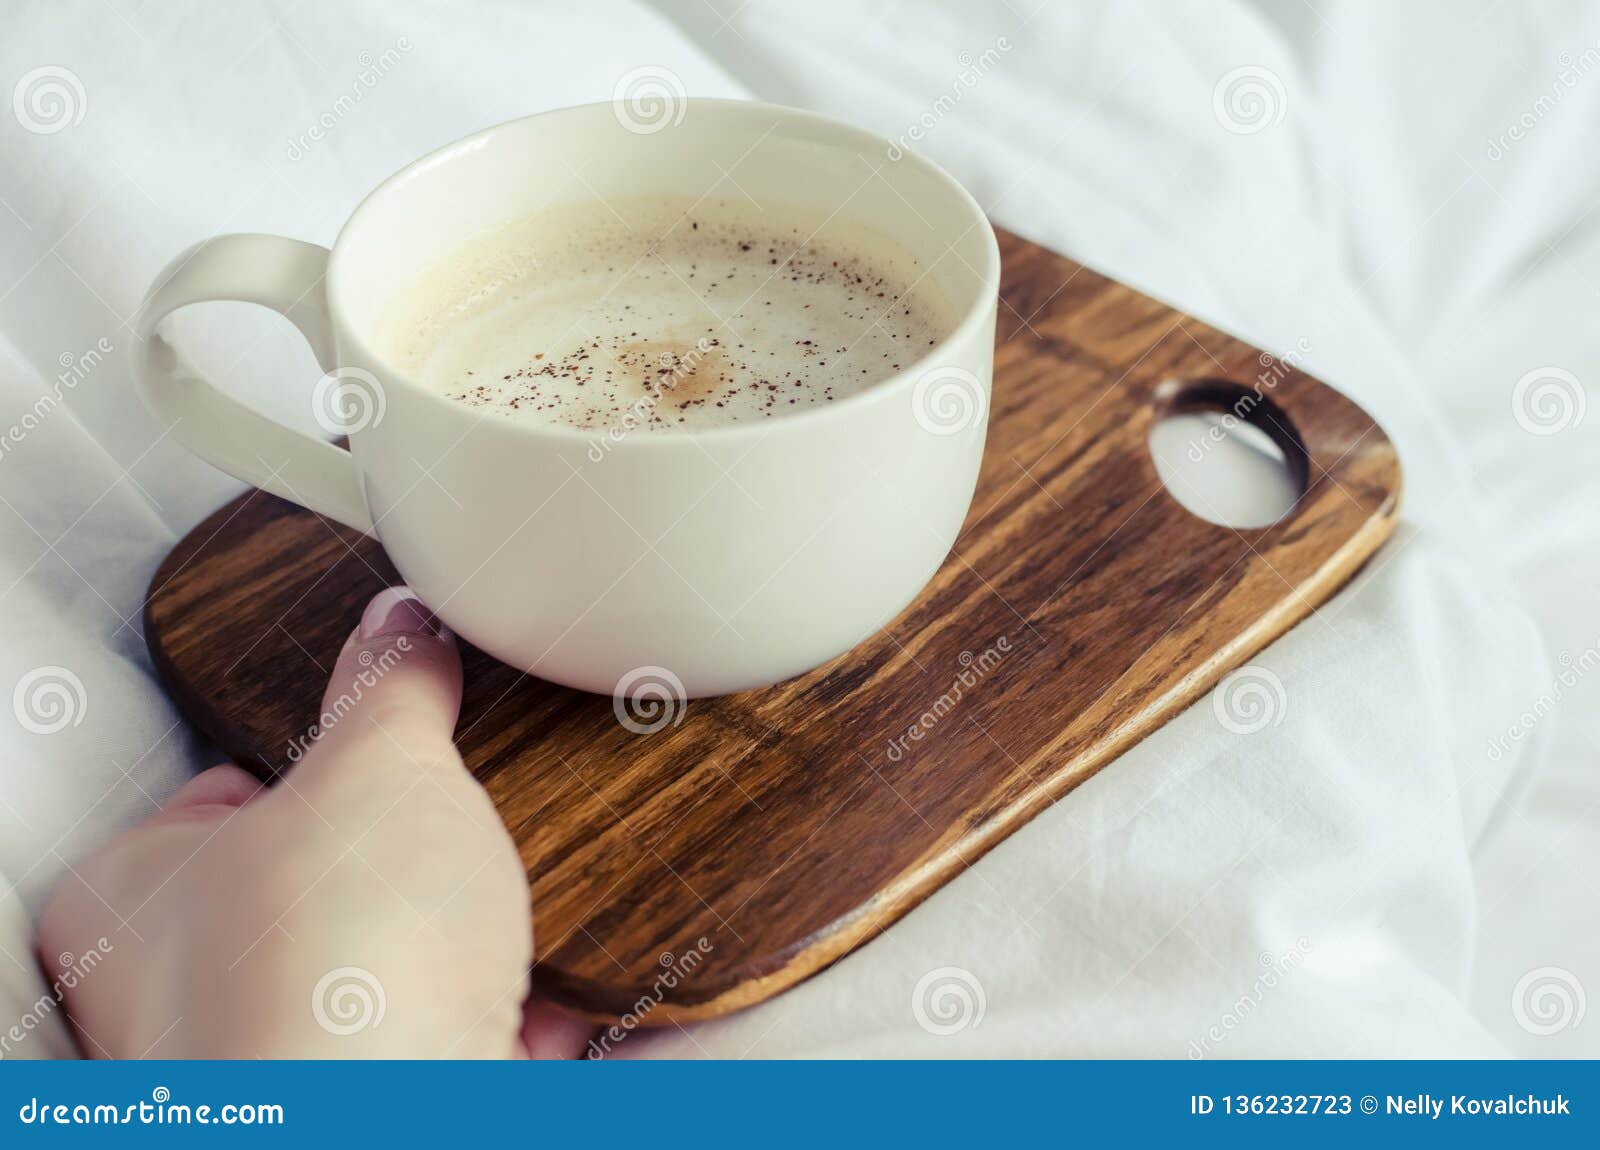 Кофе В Руках Фото Реальное